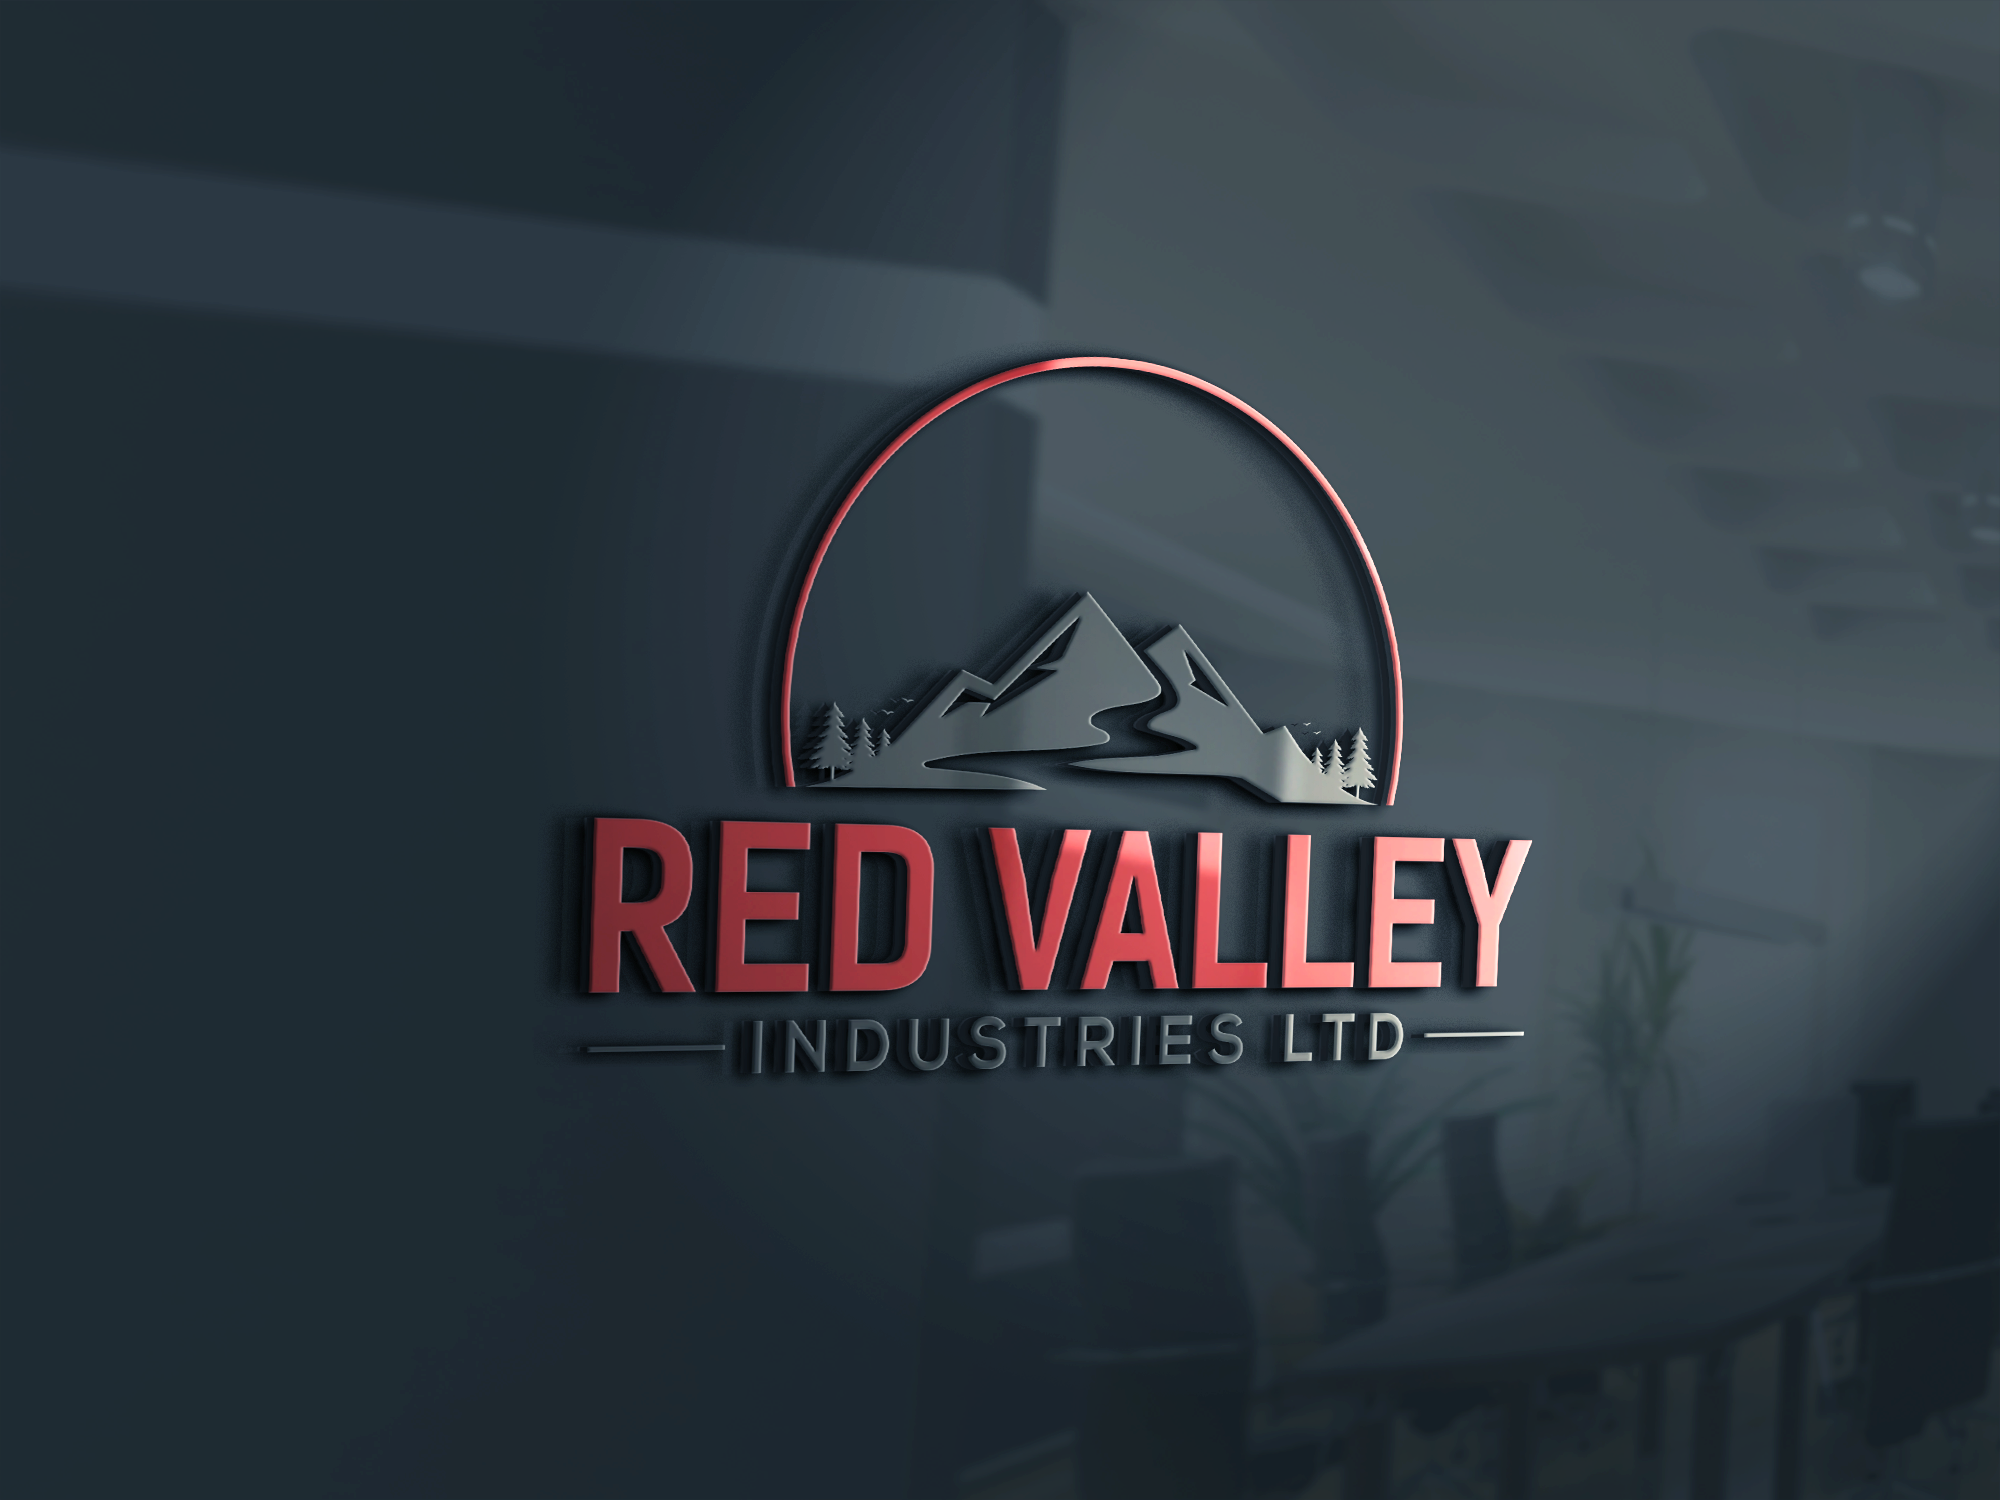 Red Valley Industries Ltd